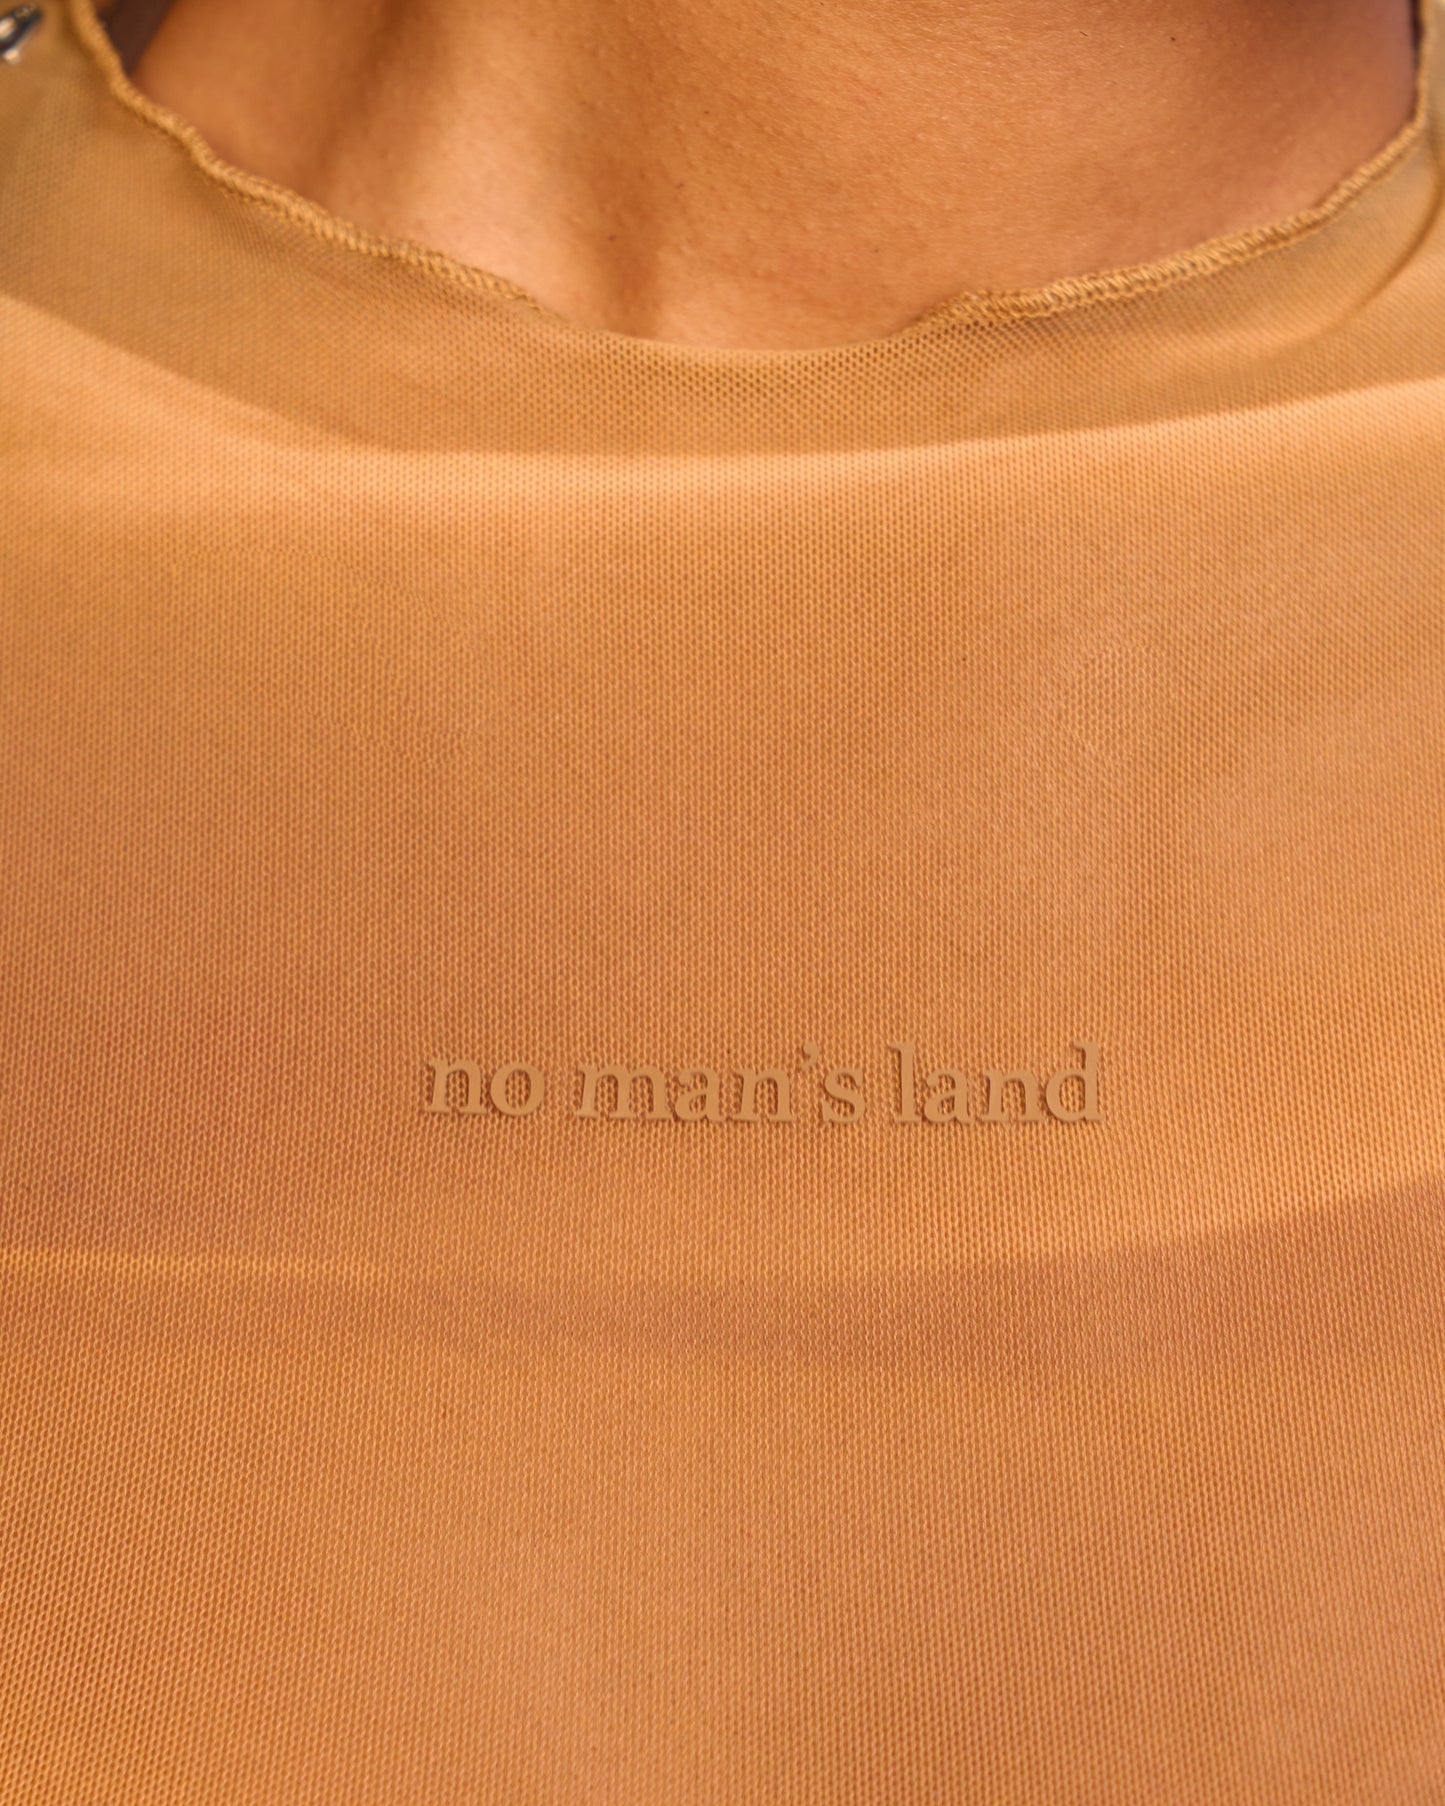 No Man's Land Tank Top